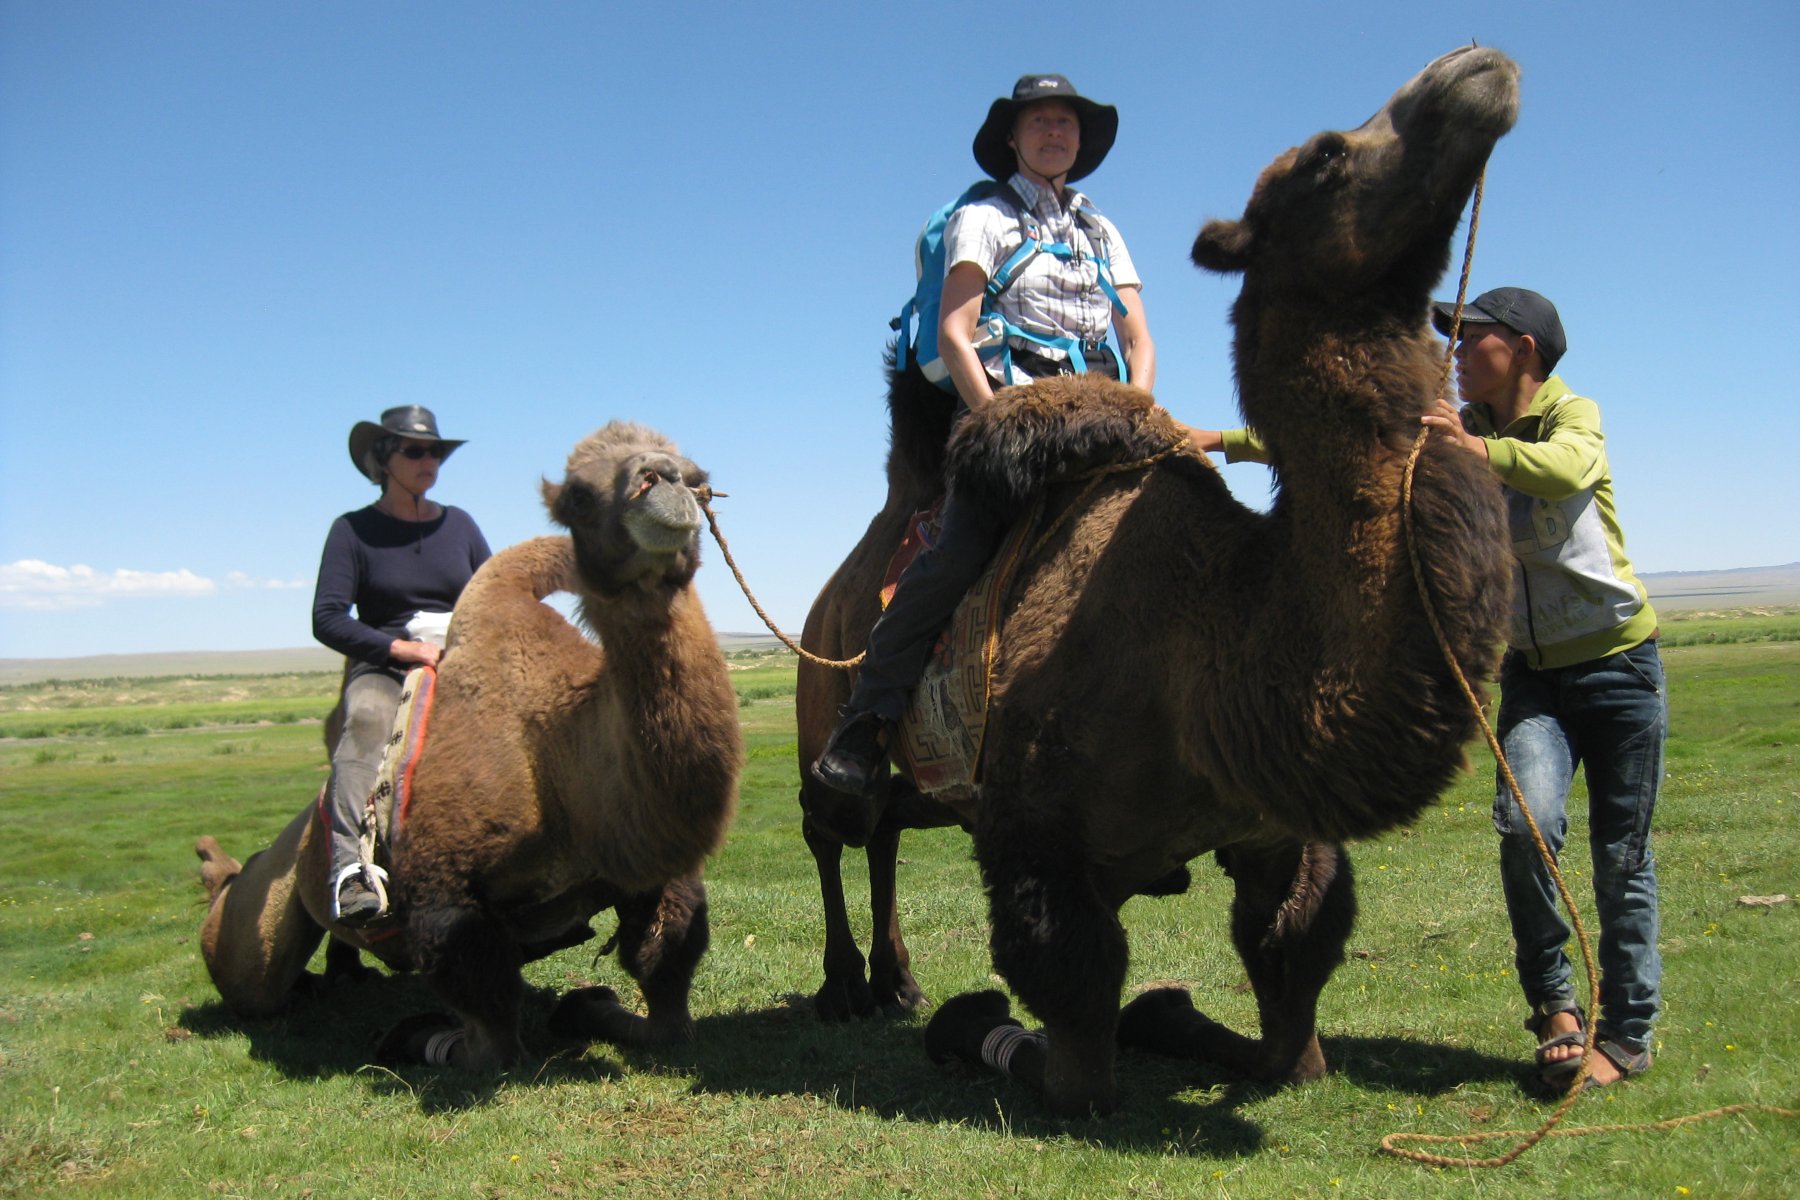 Kamele sind wichtige Nutztiere in der Mongolei, sie dienen zur Überbrückung von Entfernungen und zum Transport von Lasten in der Steppe und der Gobi.